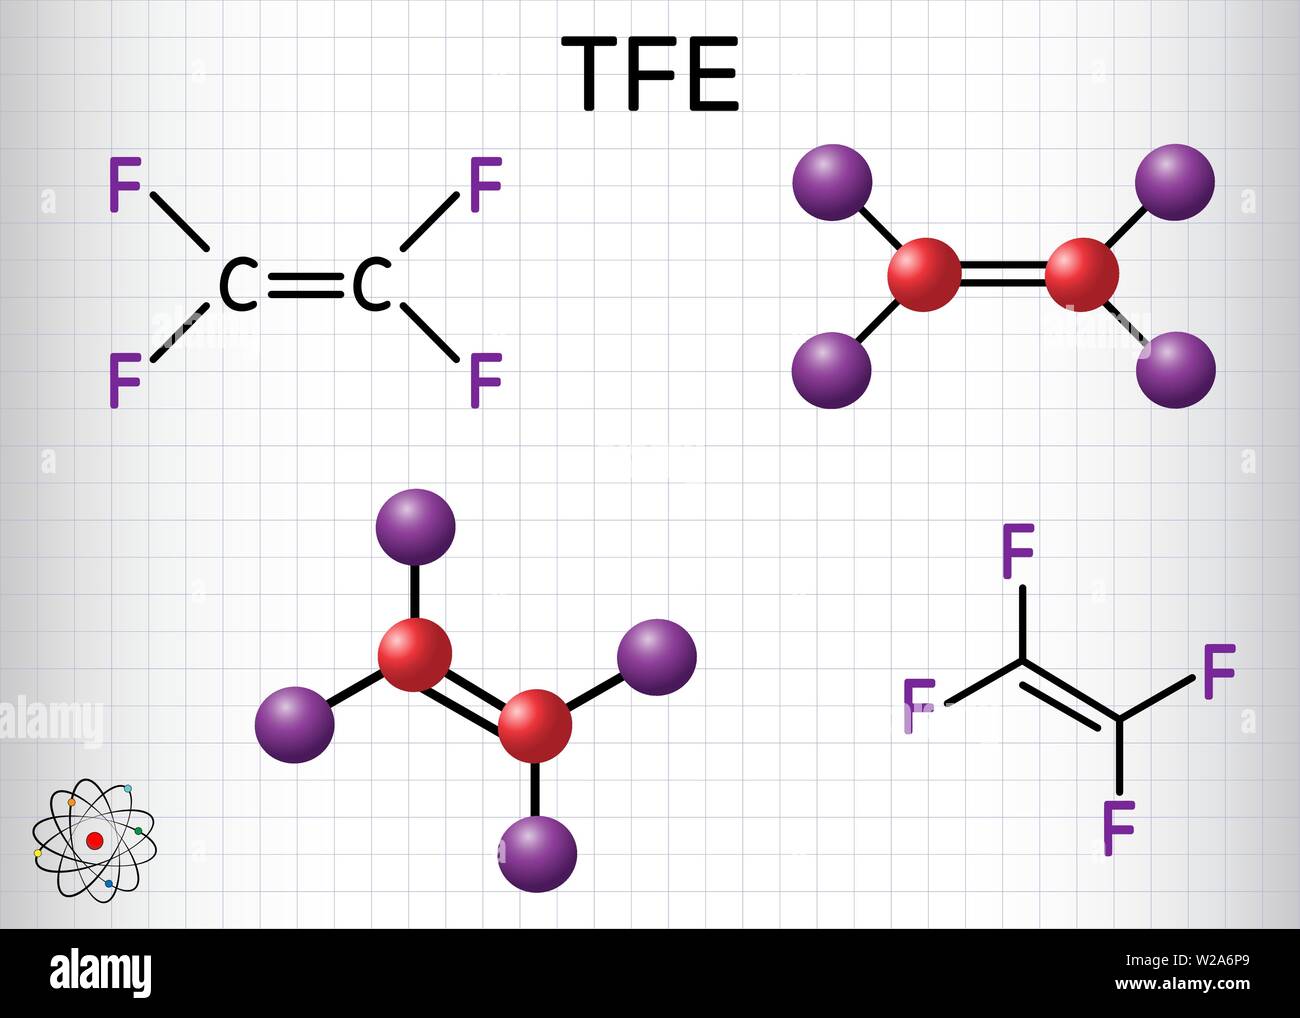 Tetrafluorethylen- oder TFE-Molekül, ist ein Monomer aus Polytetrafluorethylen oder PTFE. Es gehört zur Familie der Fluorkohlenwasserstoffe. Blatt Papier in einem Stock Vektor